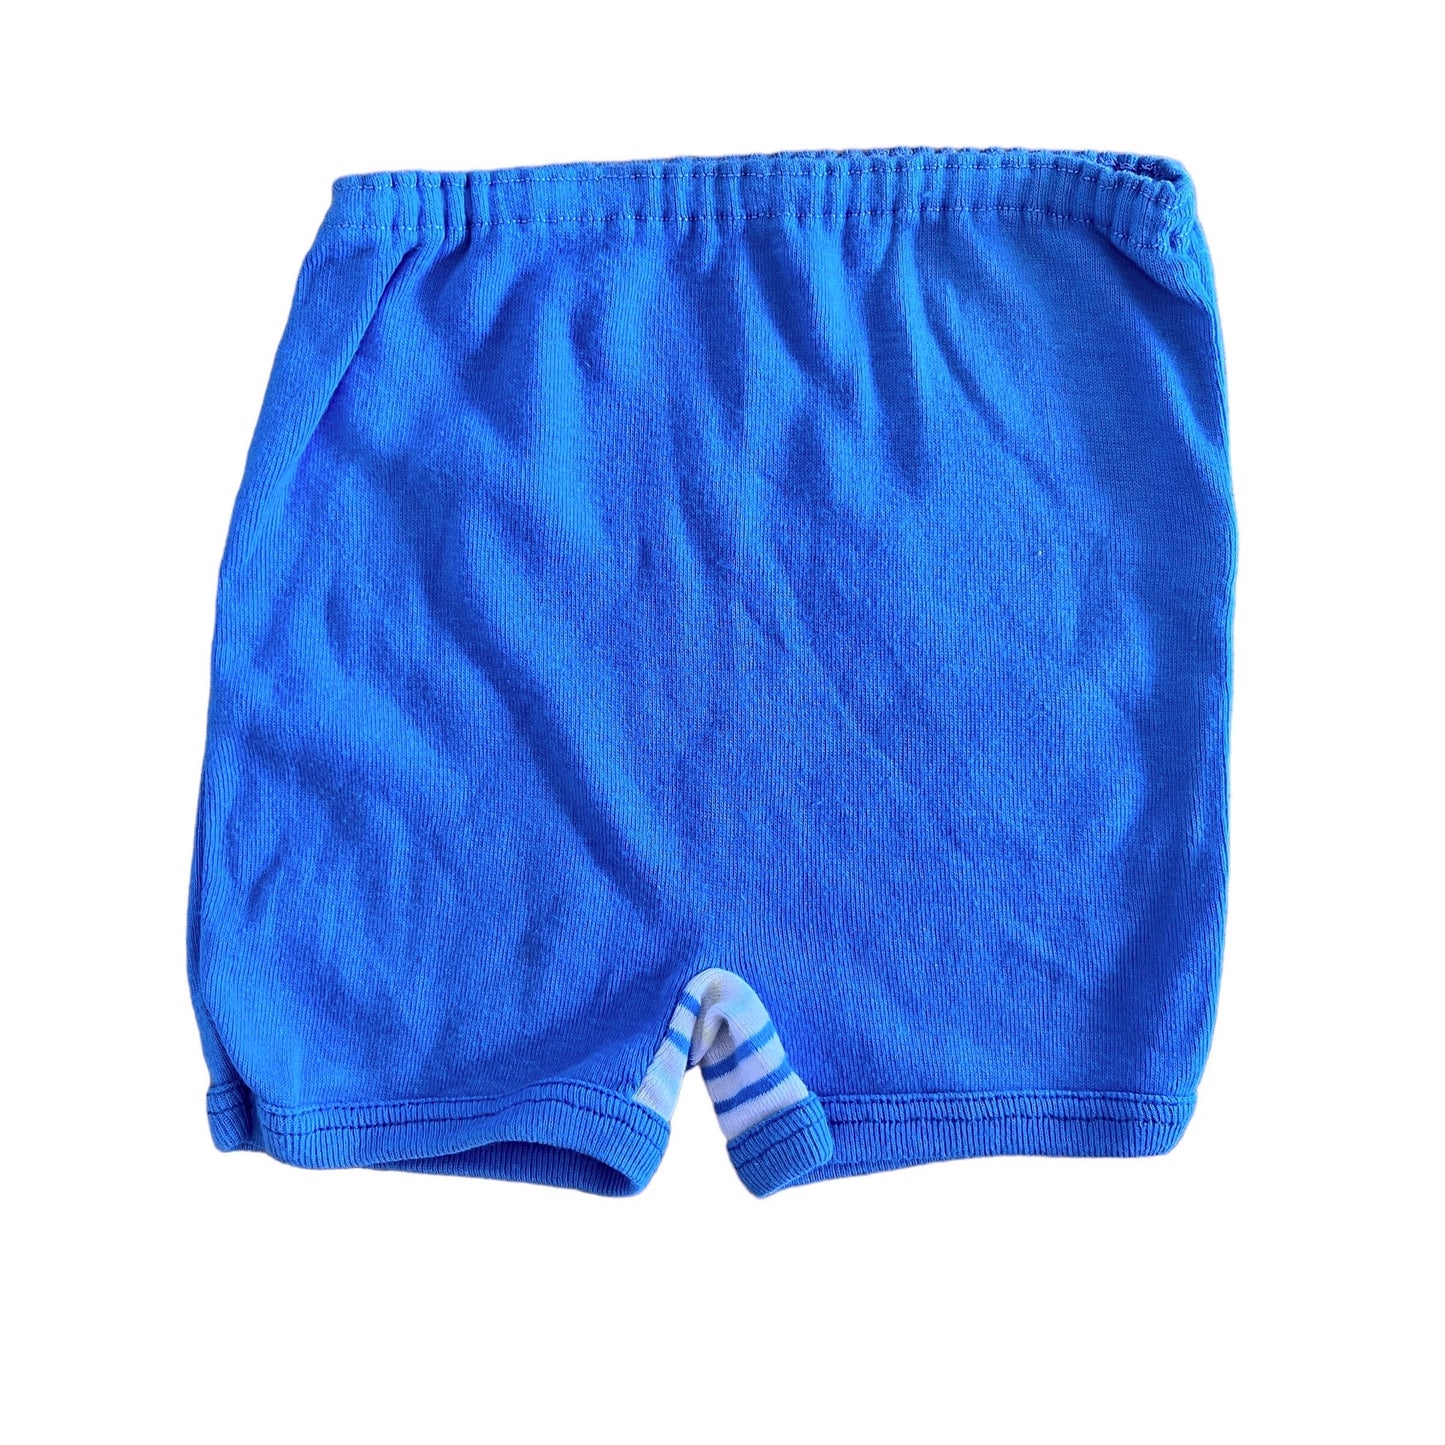 Vintage 70's Blue / Cotton Shorts / Pants / Underwear 0-6M